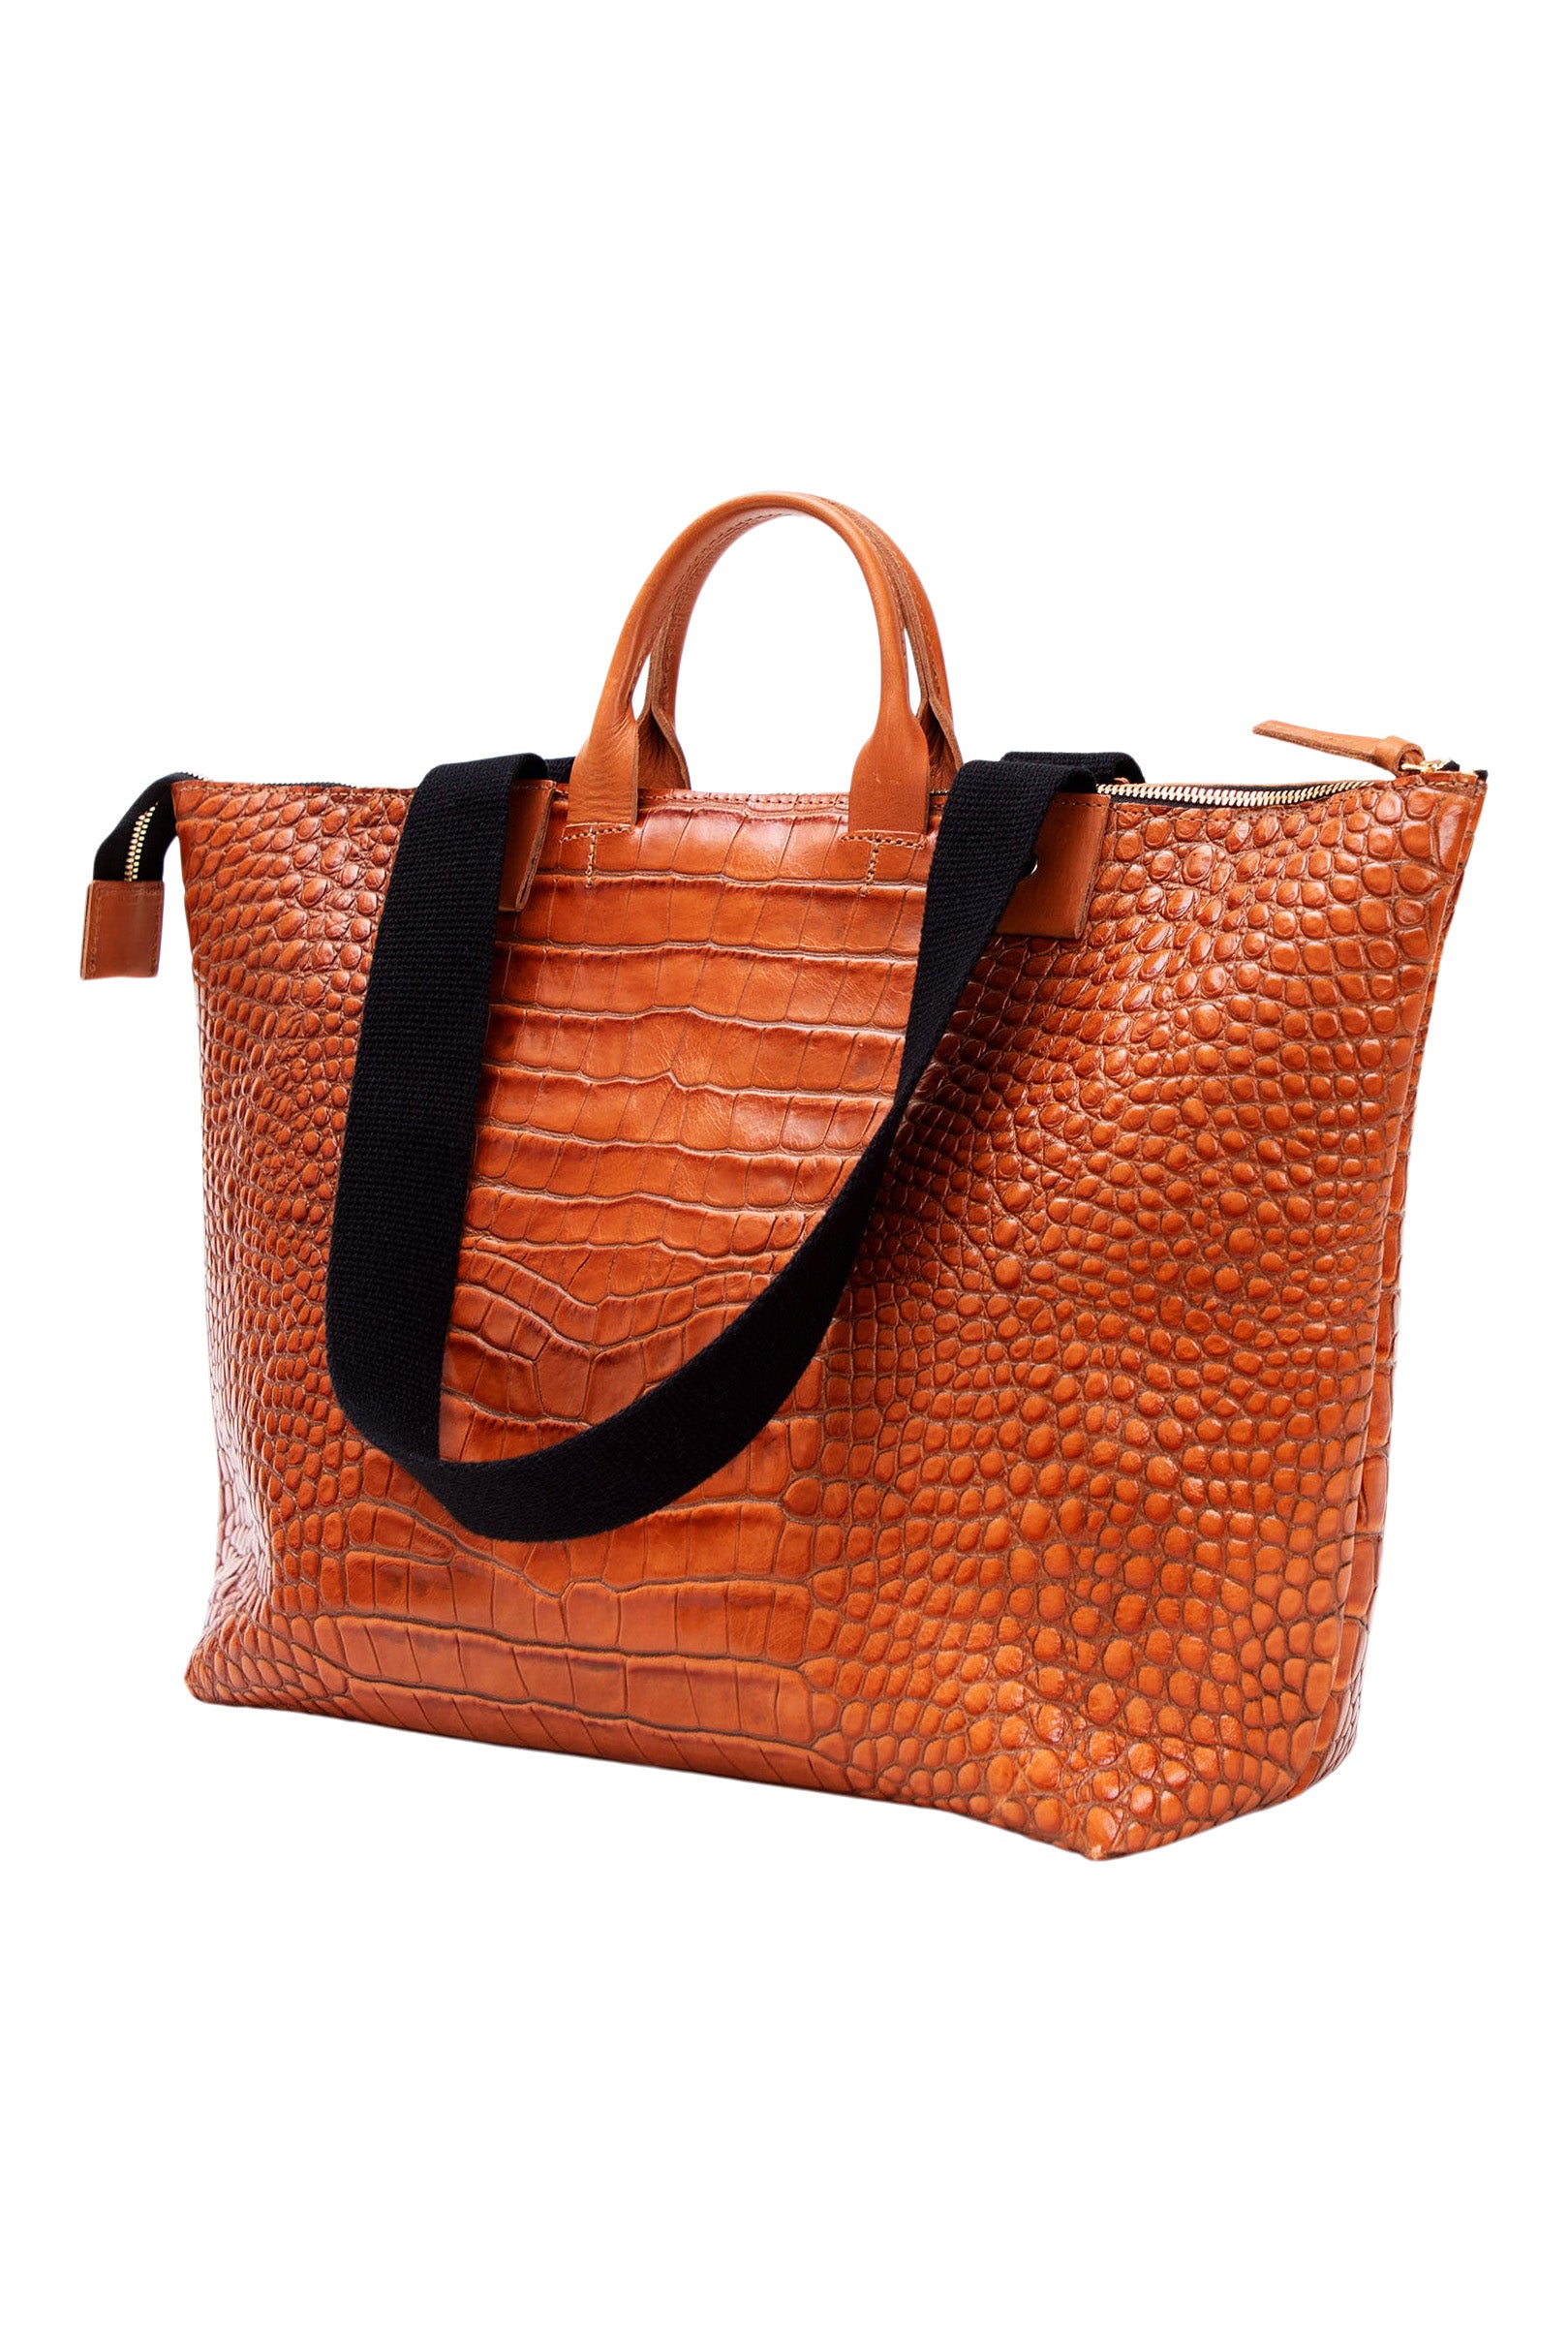 Handbag Clare V Black in Suede - 31881240